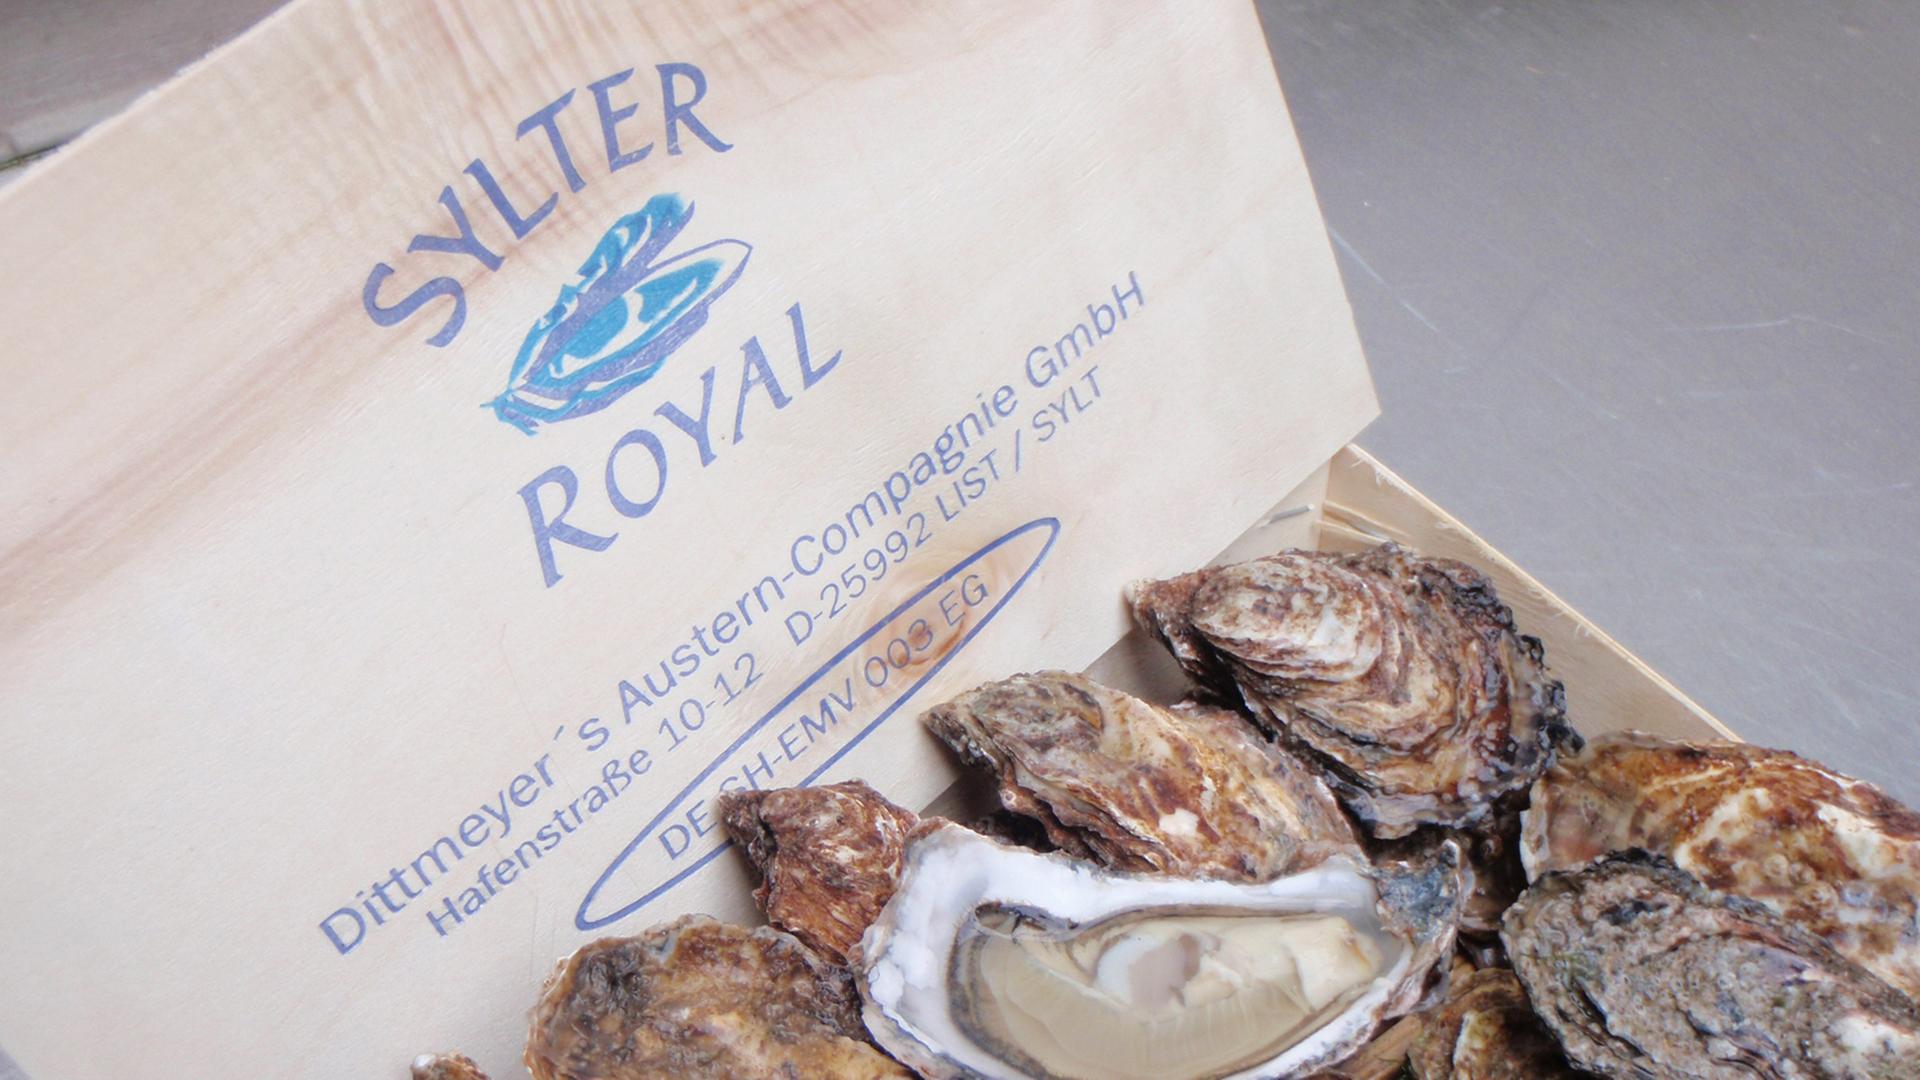 Unter dem Markennamen "Sylter Royal" kommen die auf Sylt gezüchteten Austern in den Handel.